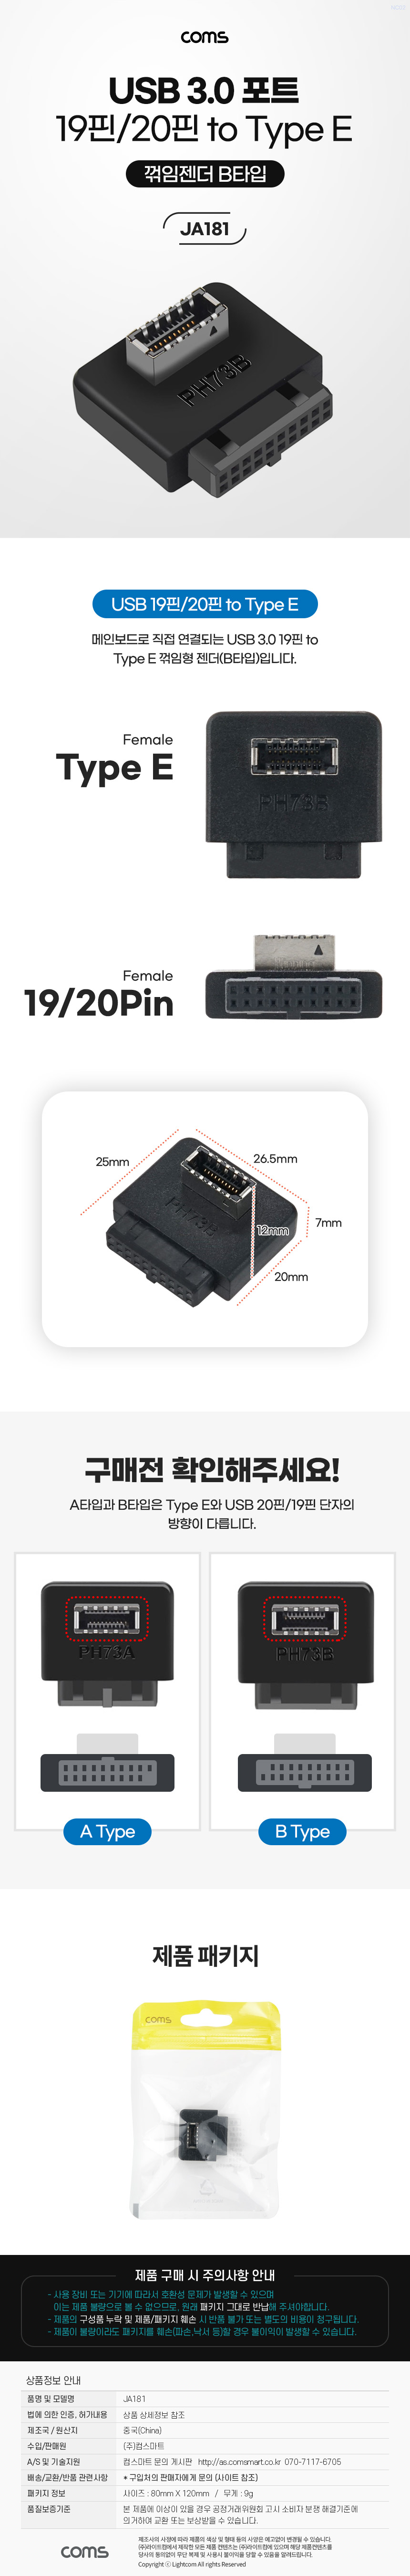 USB 3.0 19핀/20핀 to USB 3.1 Type E 젠더 F/F 메인보드 마더보드